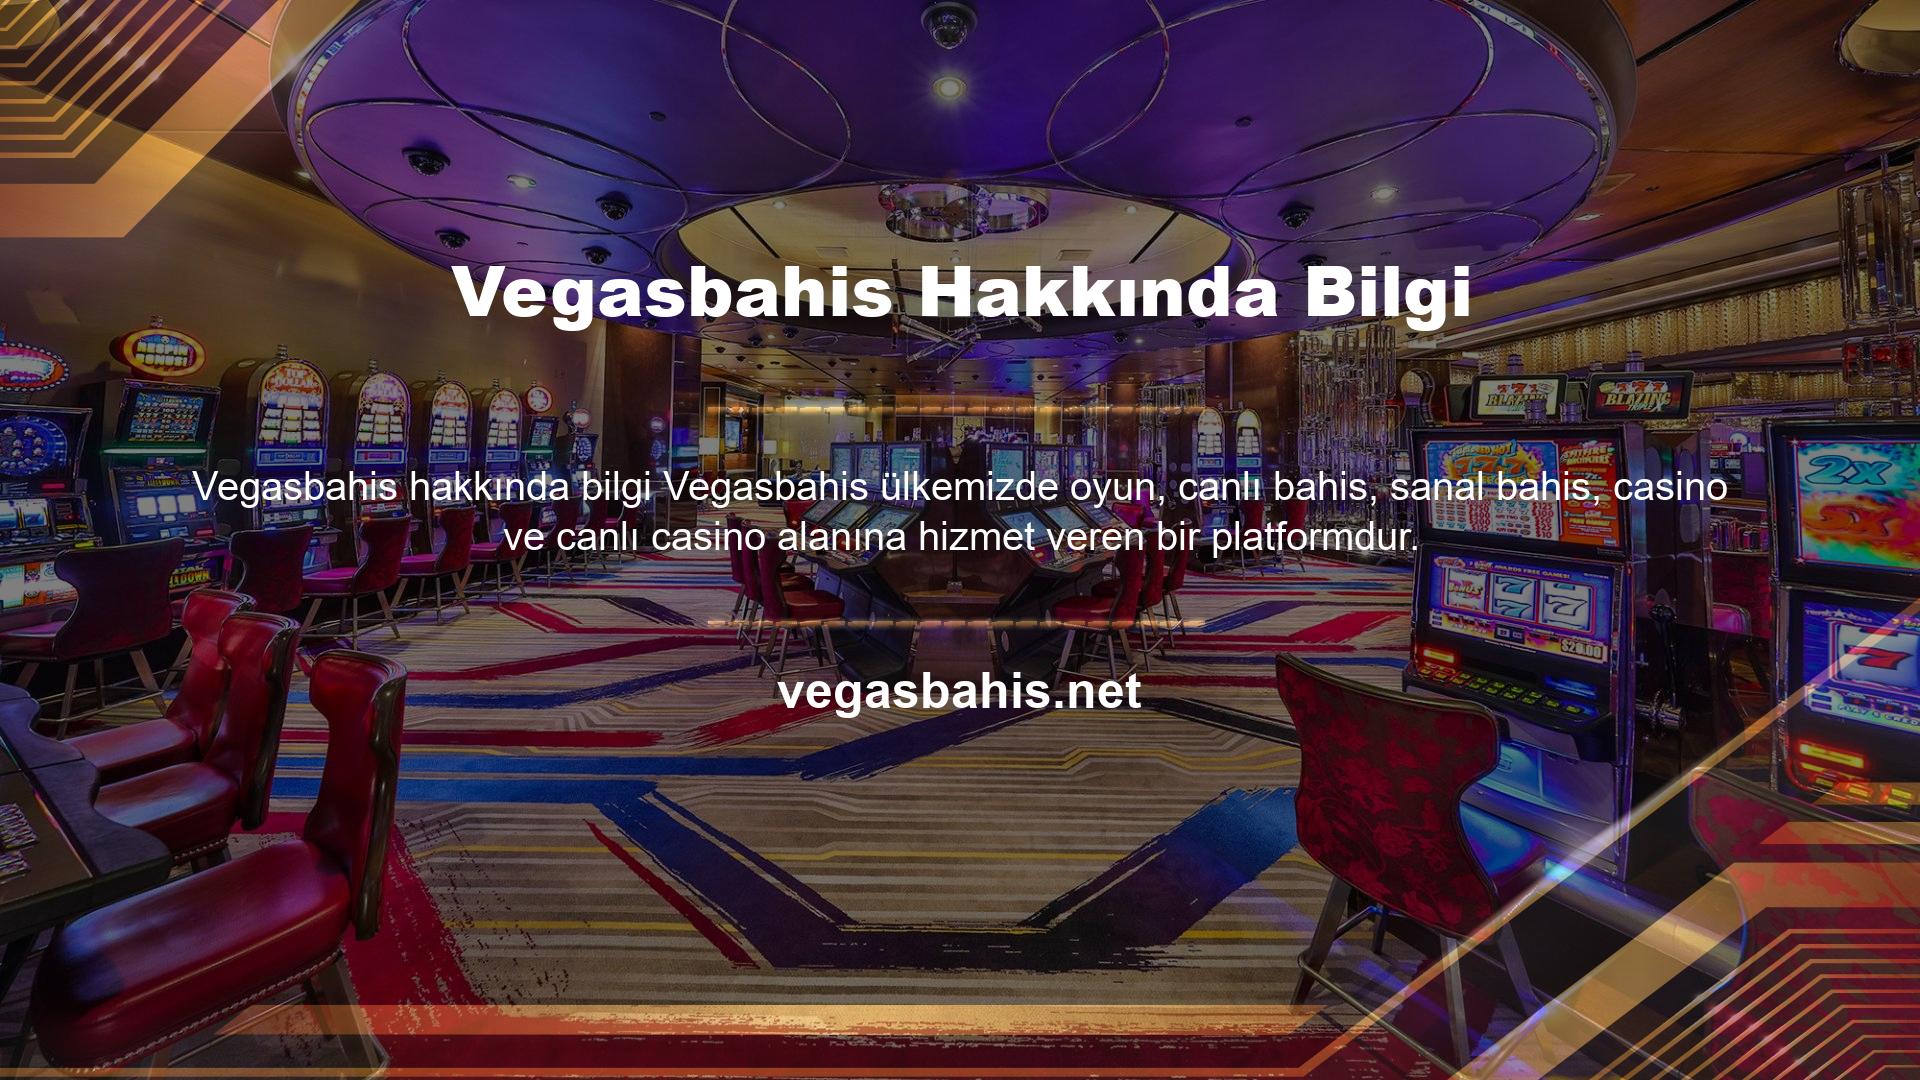 Vegasbahis hakkında bilgi casino severler tarafından sevilir ve casino severler arasında en popüler olan en iyi bahis sitelerinden biridir